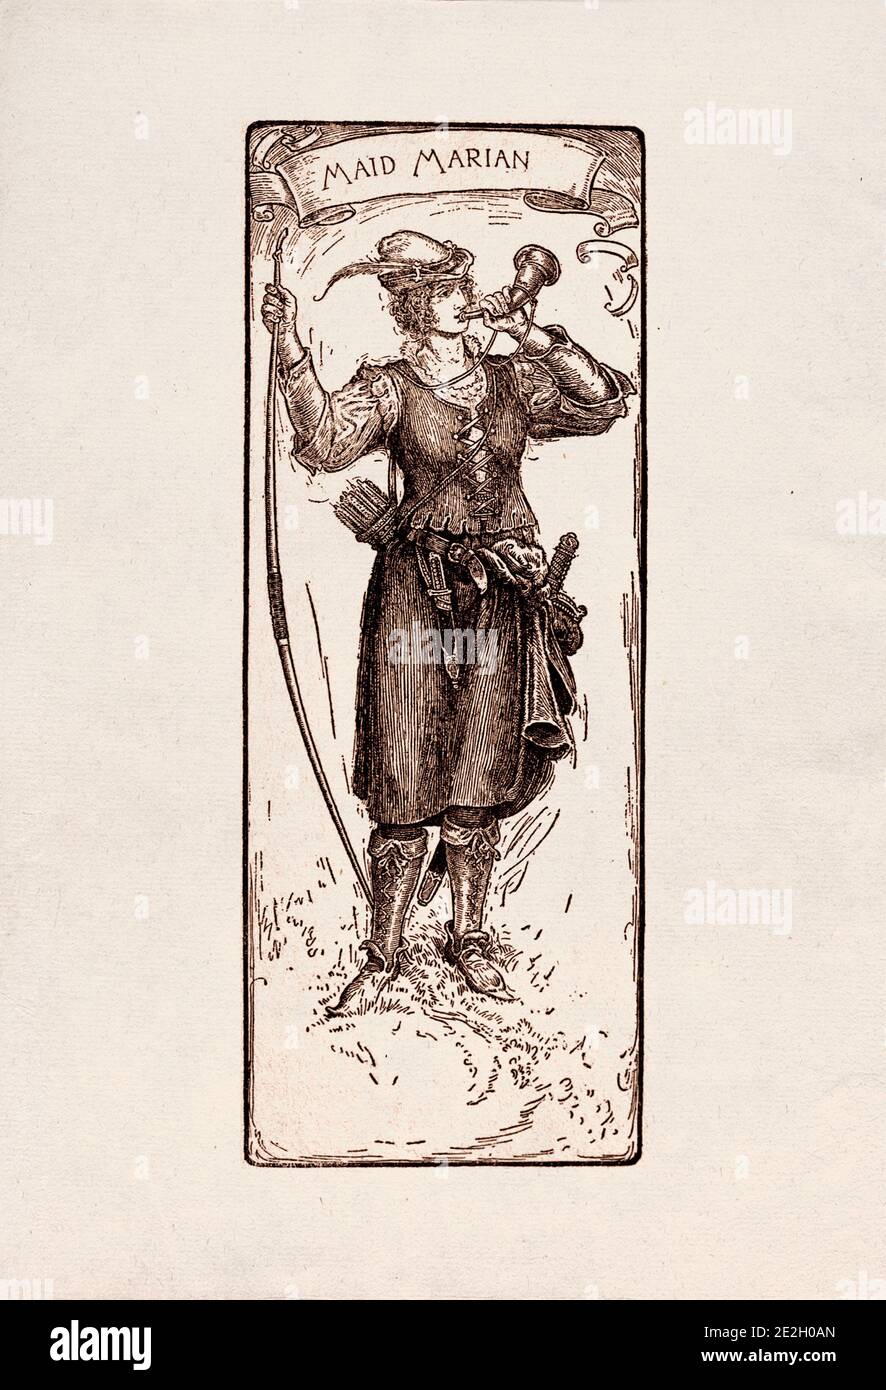 Gravure antique de personnages littéraires du folklore anglais des légendes Robin des Bois. Femme de ménage Marian. Par Louis Rhead. 1912 Banque D'Images